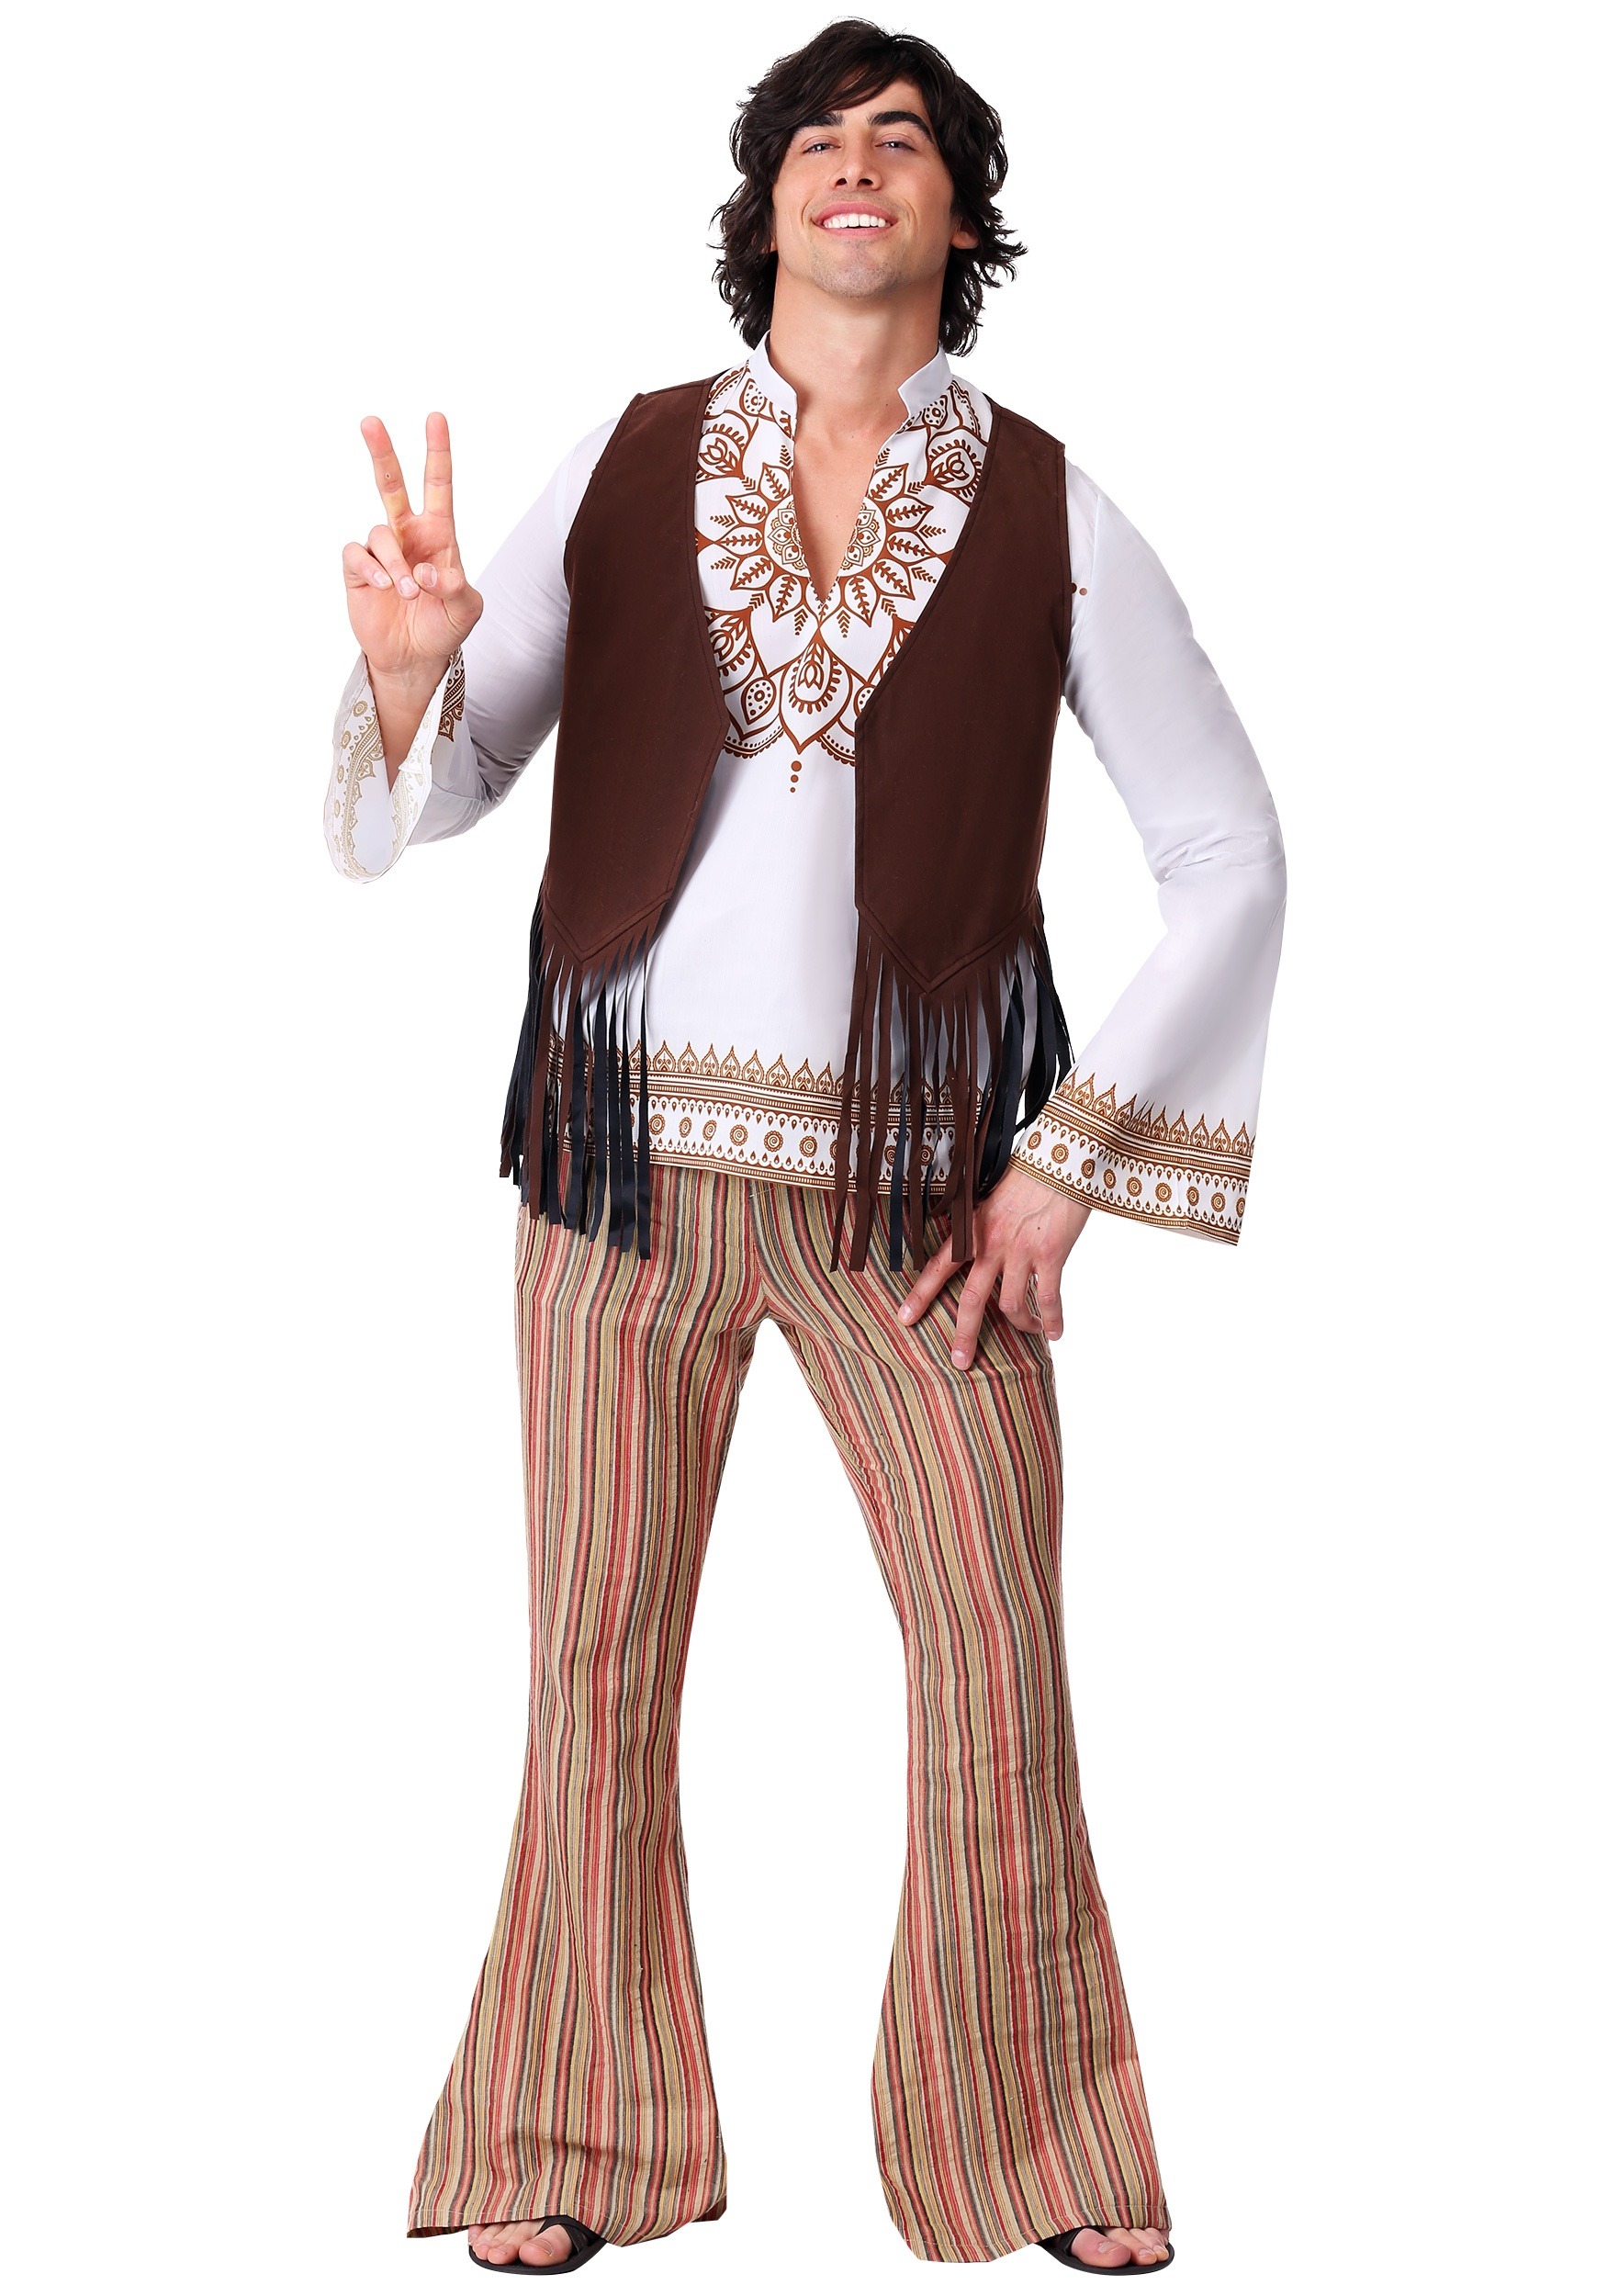 Woodstock Hippie Men's Costume